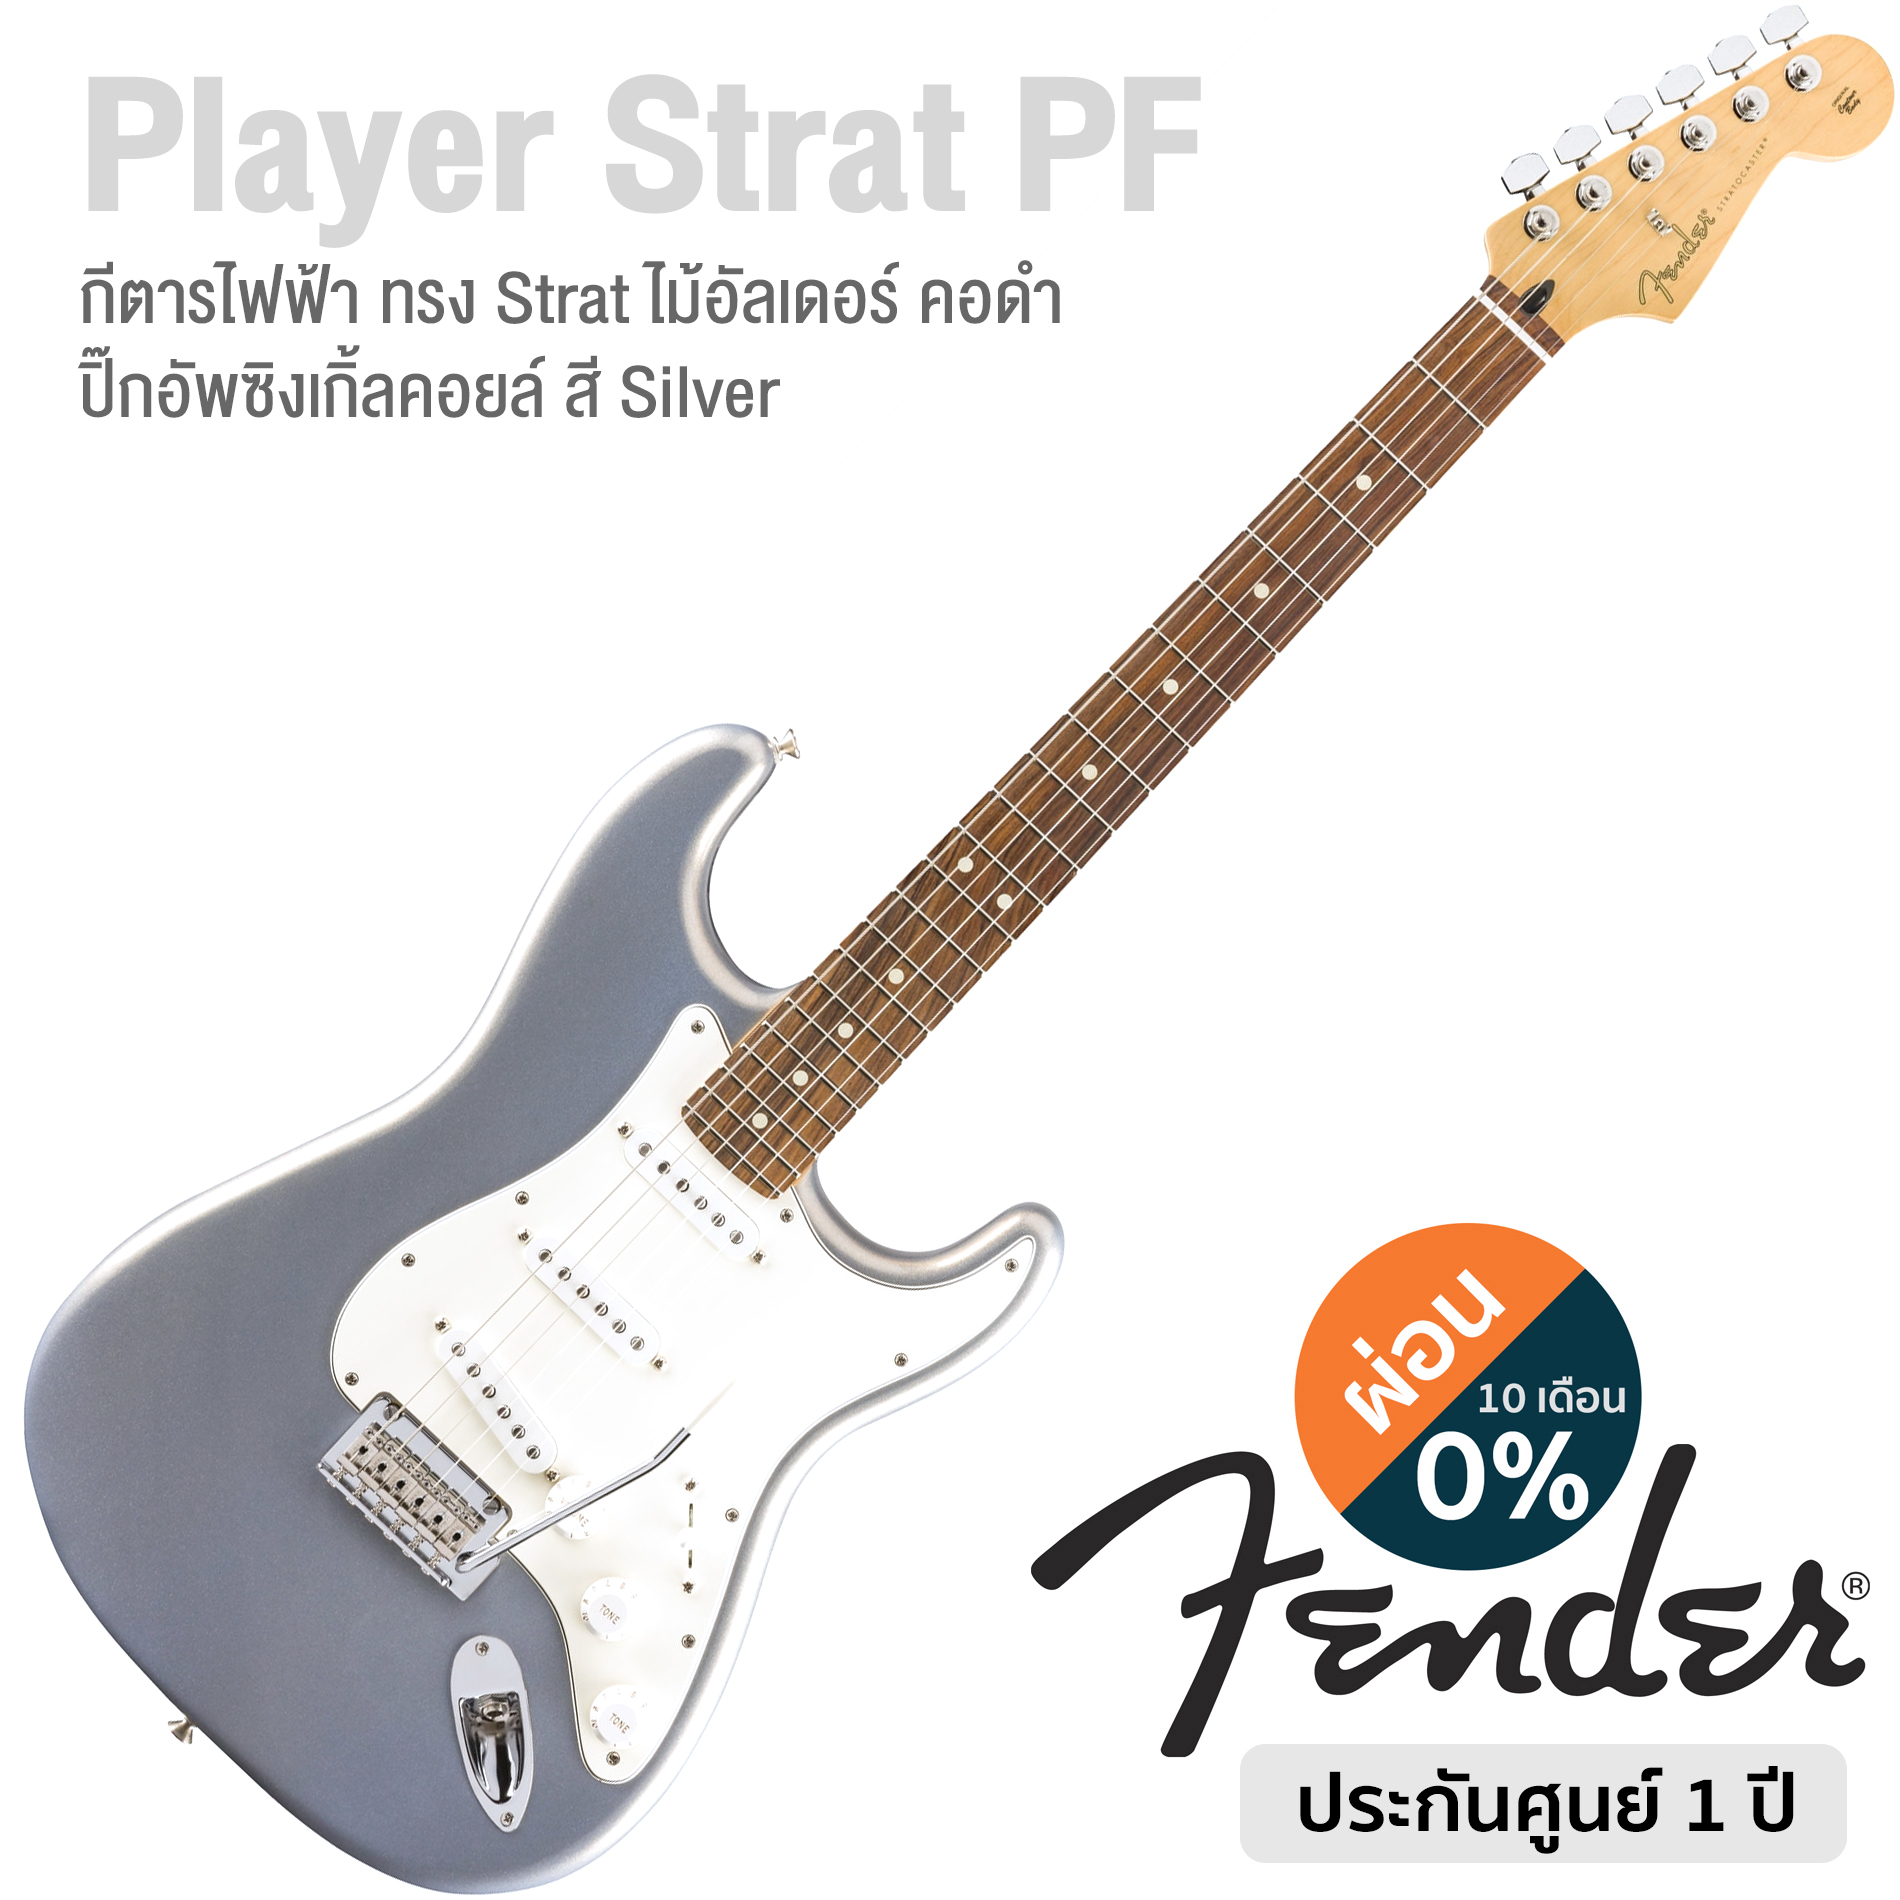 Fender® Player Strat PF กีตาร์ไฟฟ้า 22 เฟร็ต ปิ๊กอัพซิงเกิ้ลคอยล์ ฟิงเกอร์บอร์ดปัวเฟอโร คอไม้เมเปิ้ล ** Made in Mexico / ประกันศูนย์ 1 ปี **